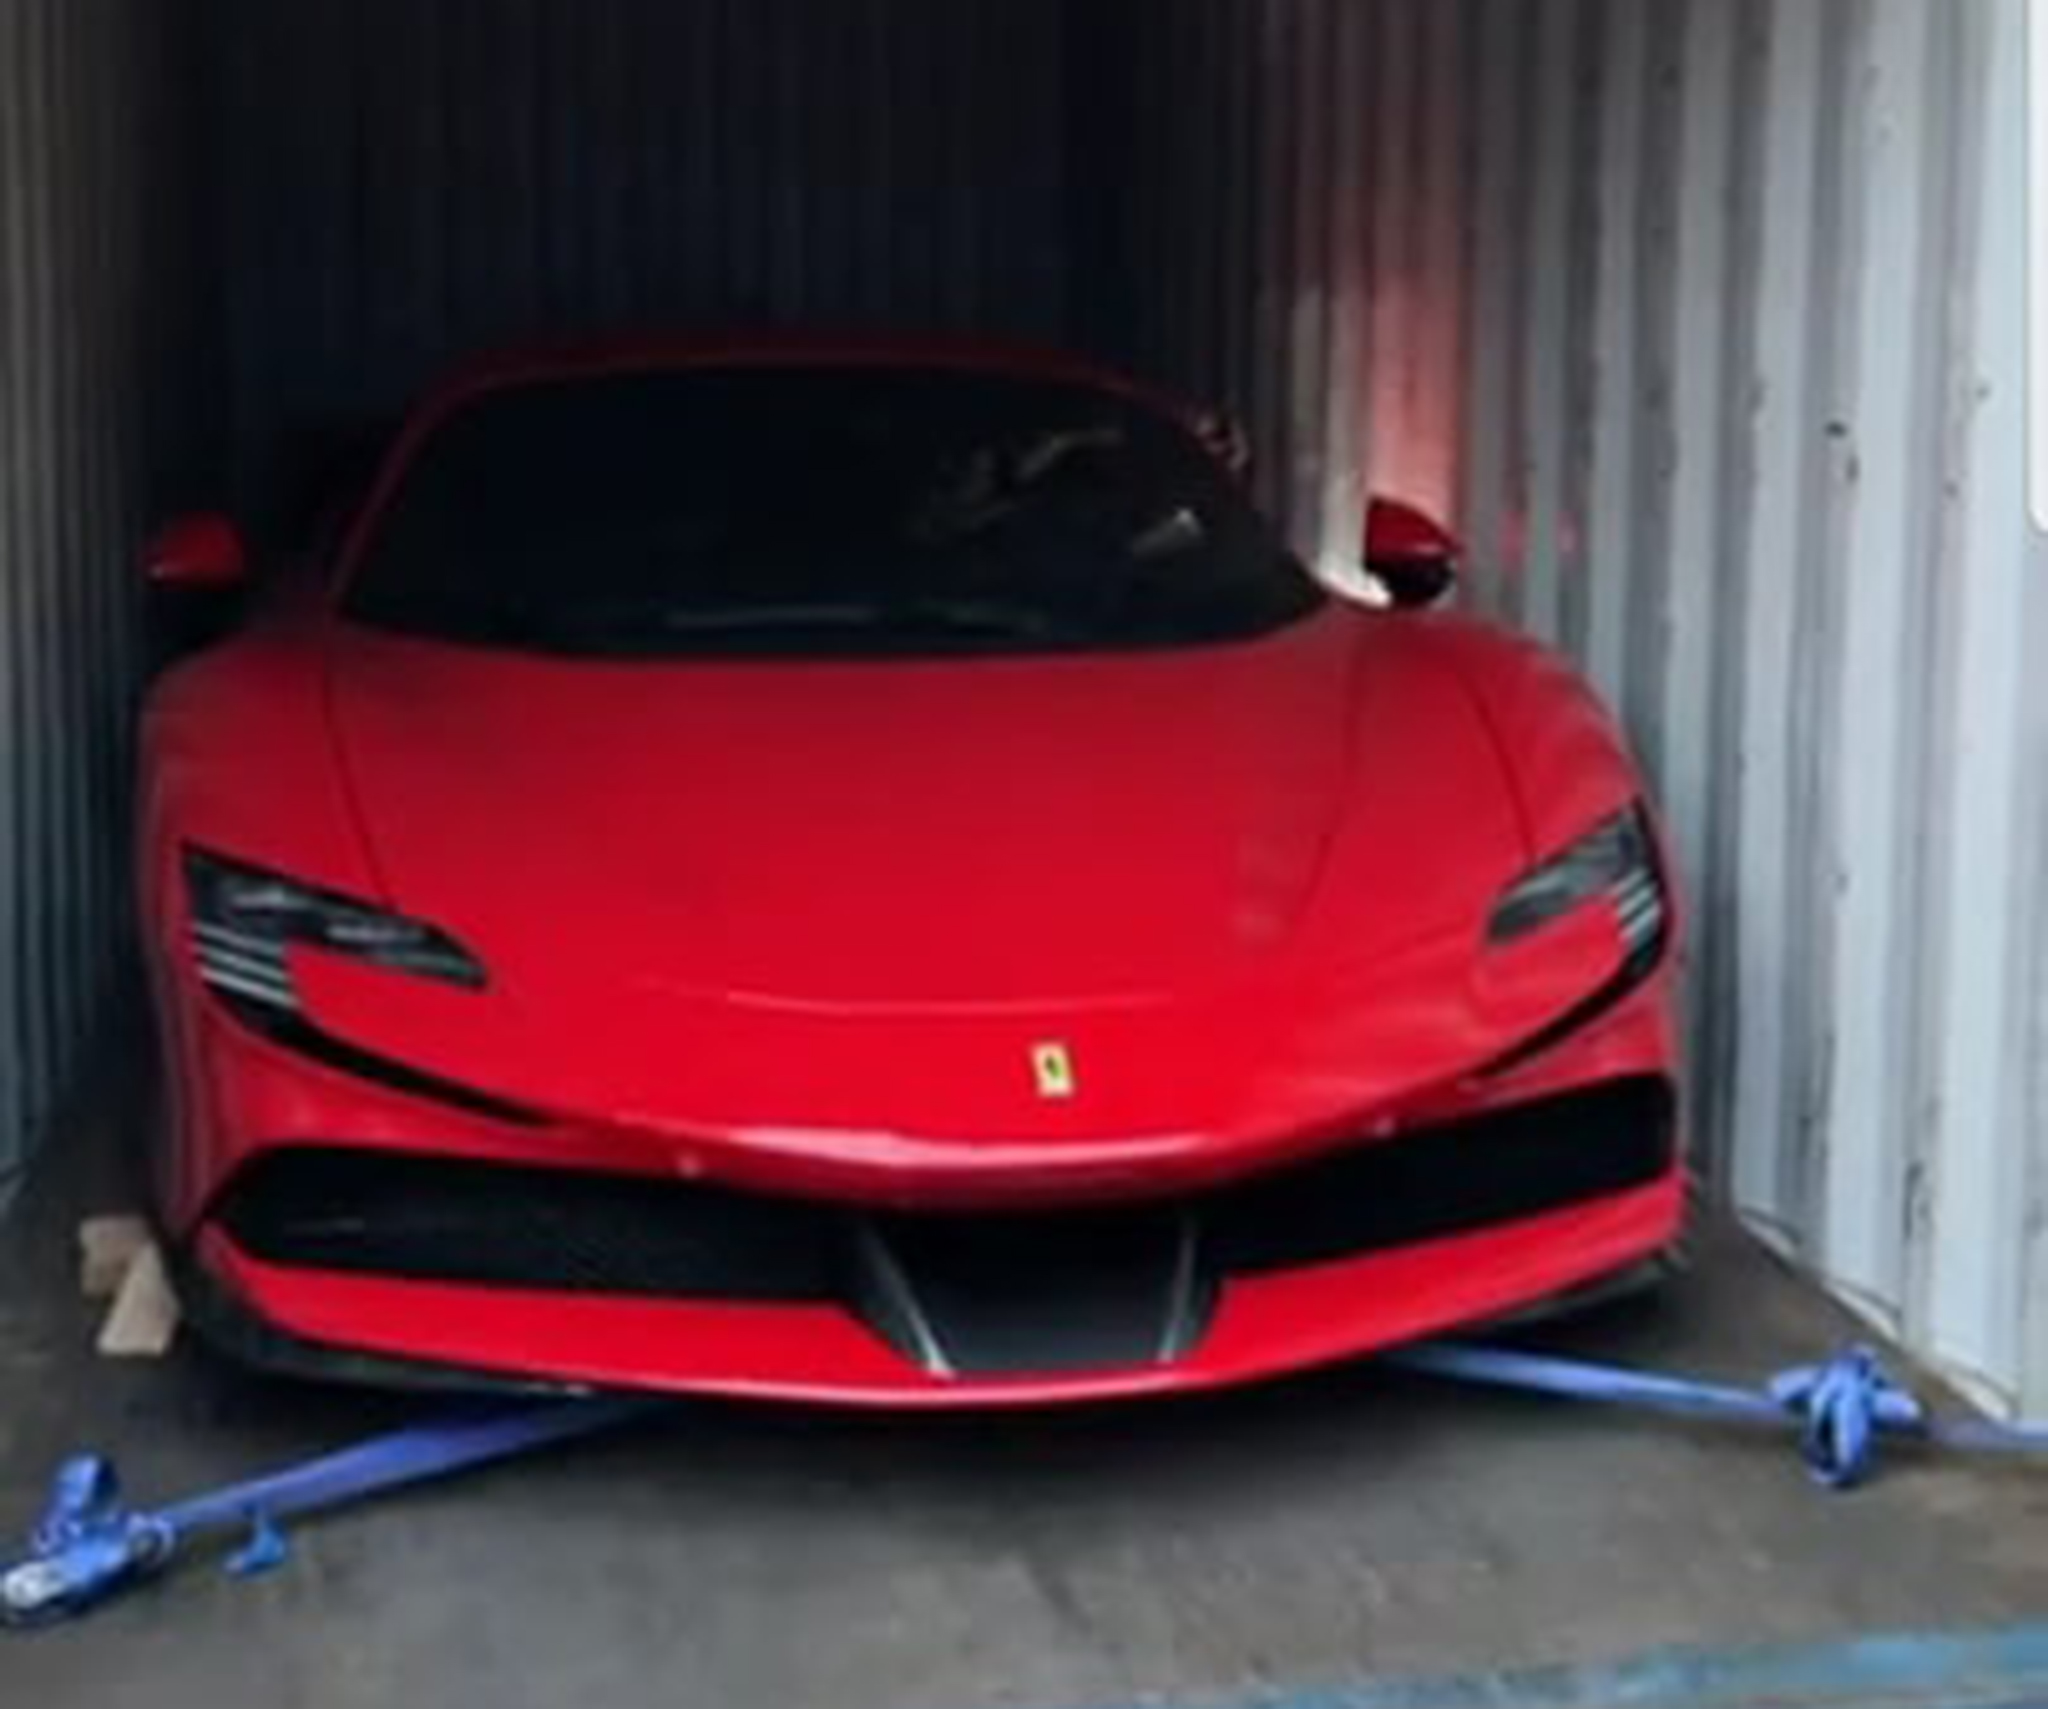 Siêu xe triệu đô Ferrari SF90 Stradale đầu tiên về Việt Nam 144302125-1051864818646308-2551460709776233466-n.jpg